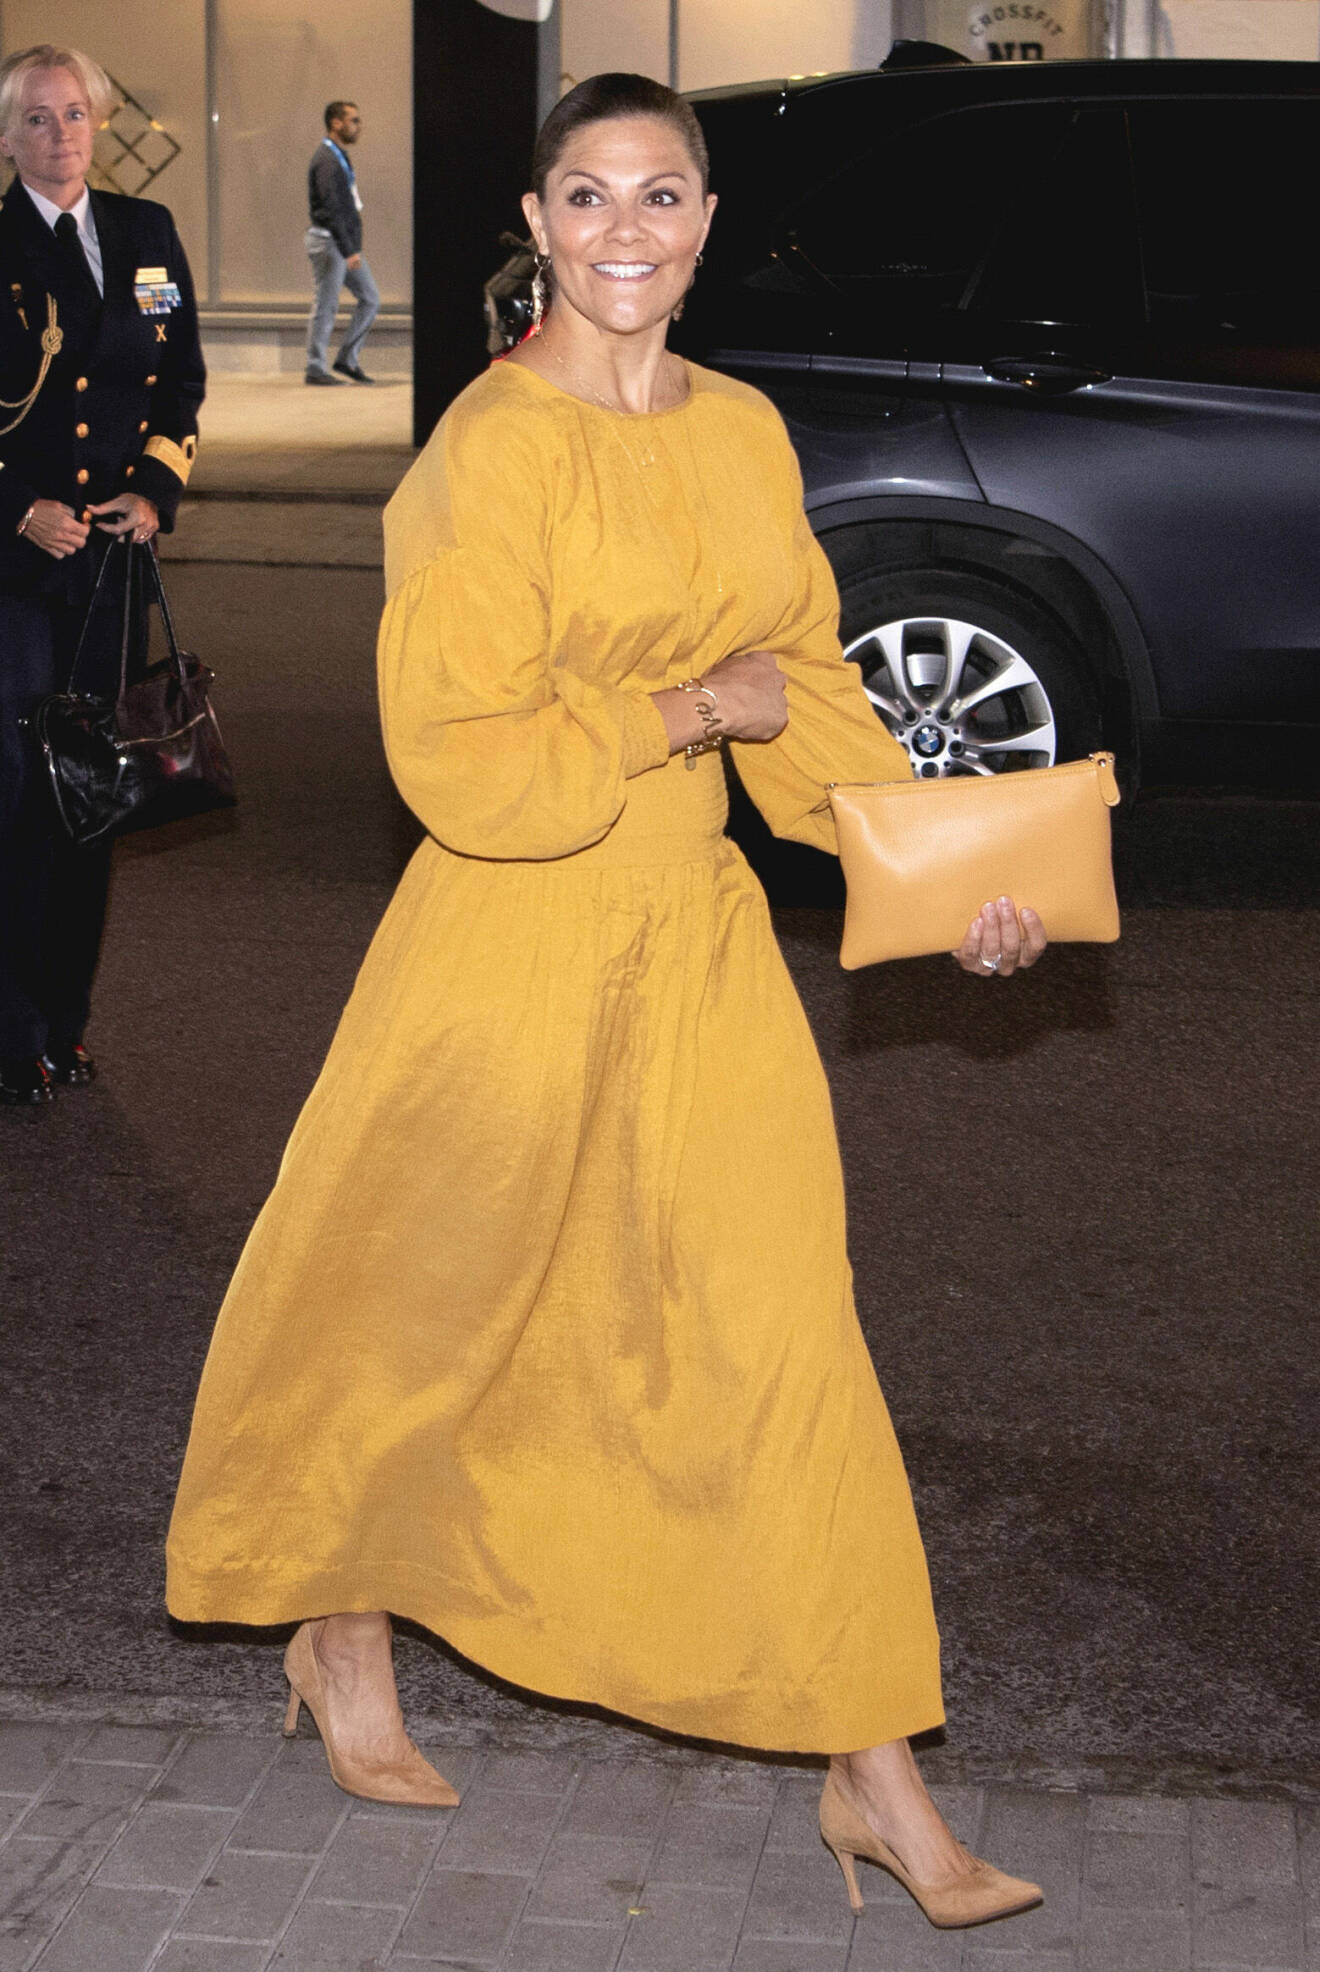 Kronprinsessan Victoria iklädd gul festklänning och matchande accessoarer.